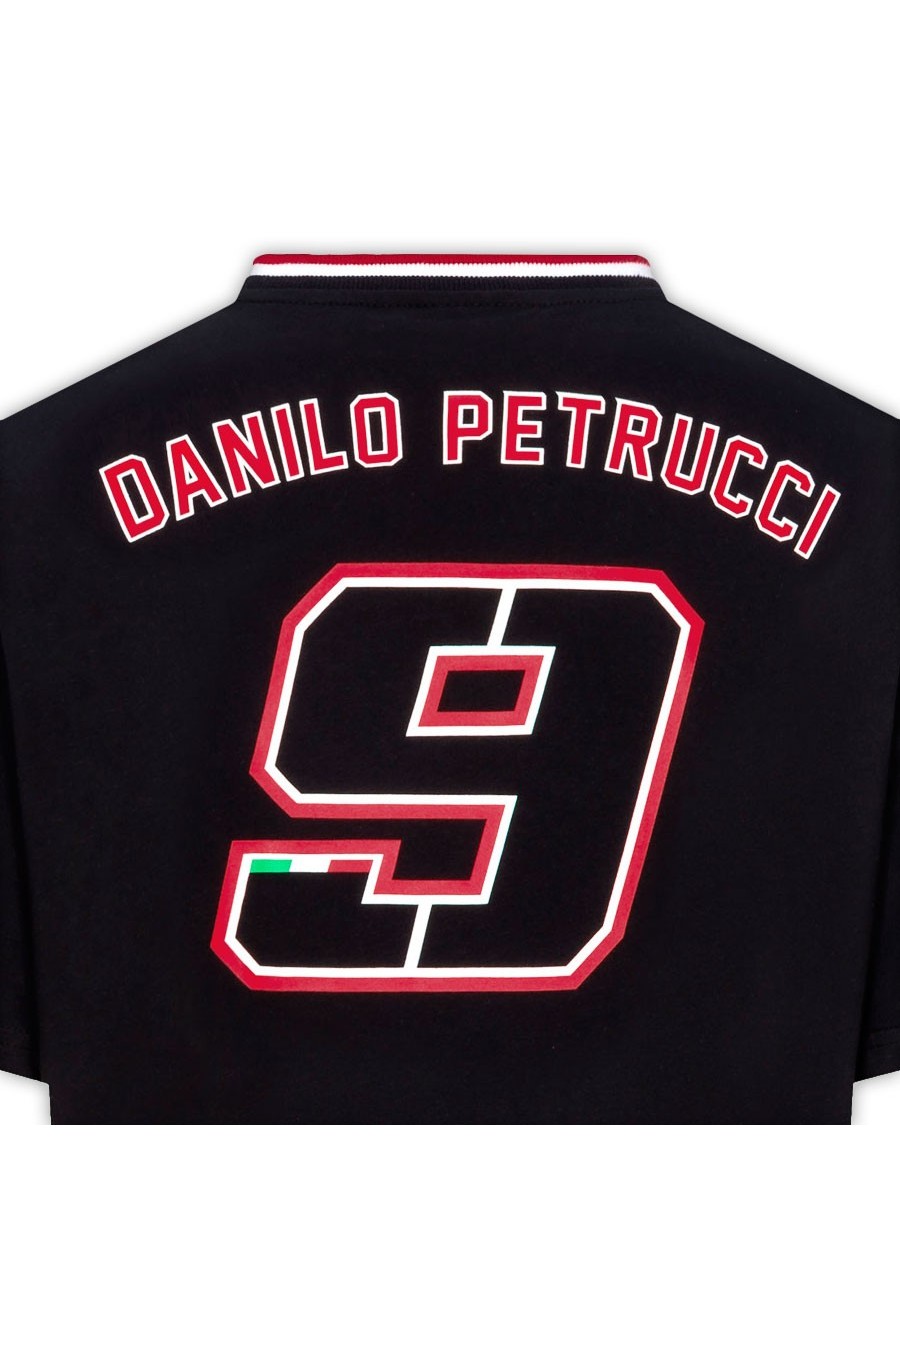 Danilo Petrucci 9-T-Shirt